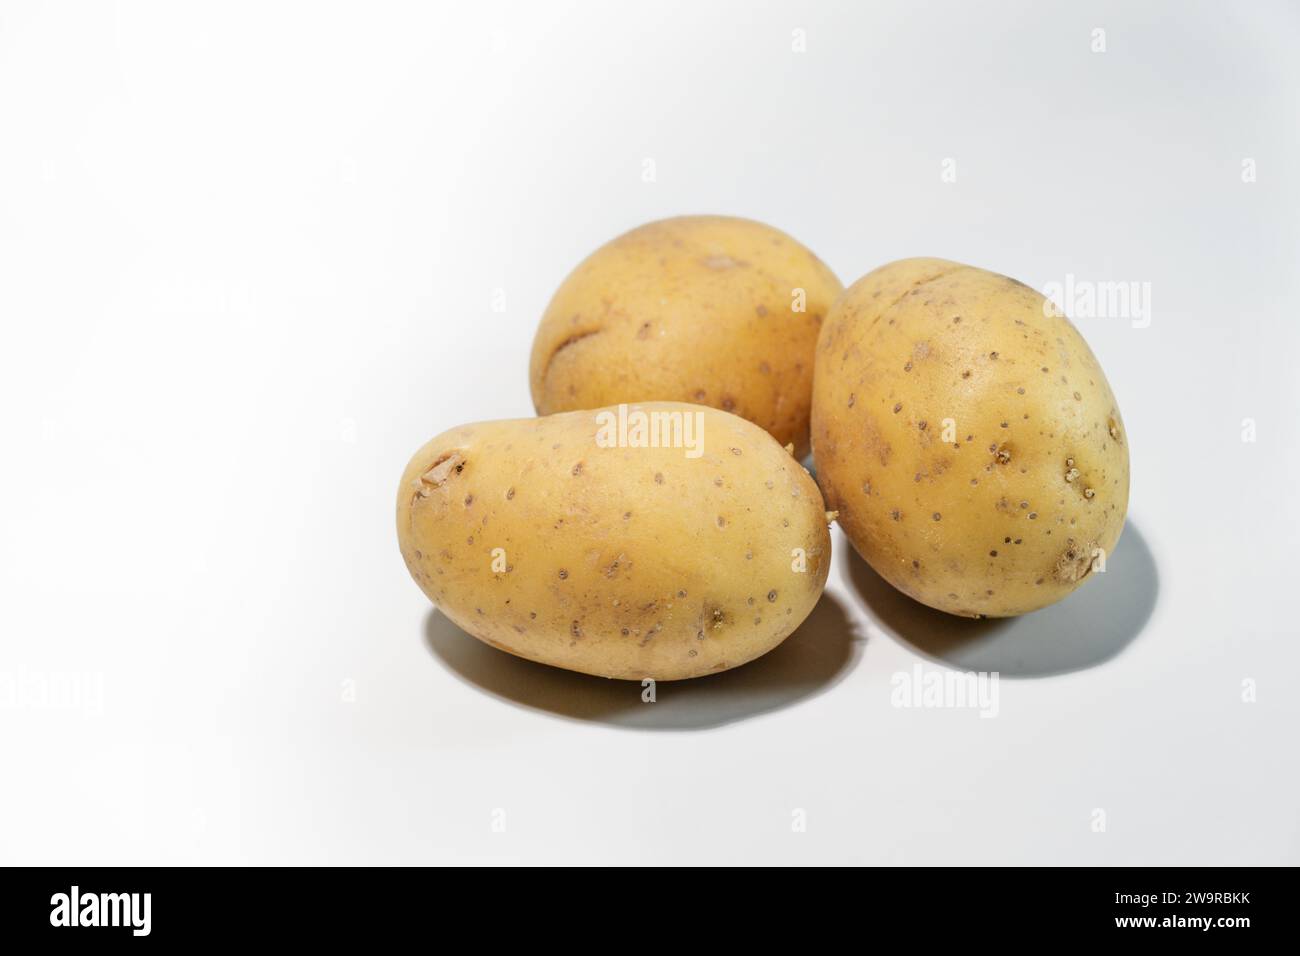 Trois pommes de terre crues sur un fond gris clair, légumes-racines contenant des glucides et aliments de base dans de nombreuses parties du monde, espace de copie, sélectionné Banque D'Images